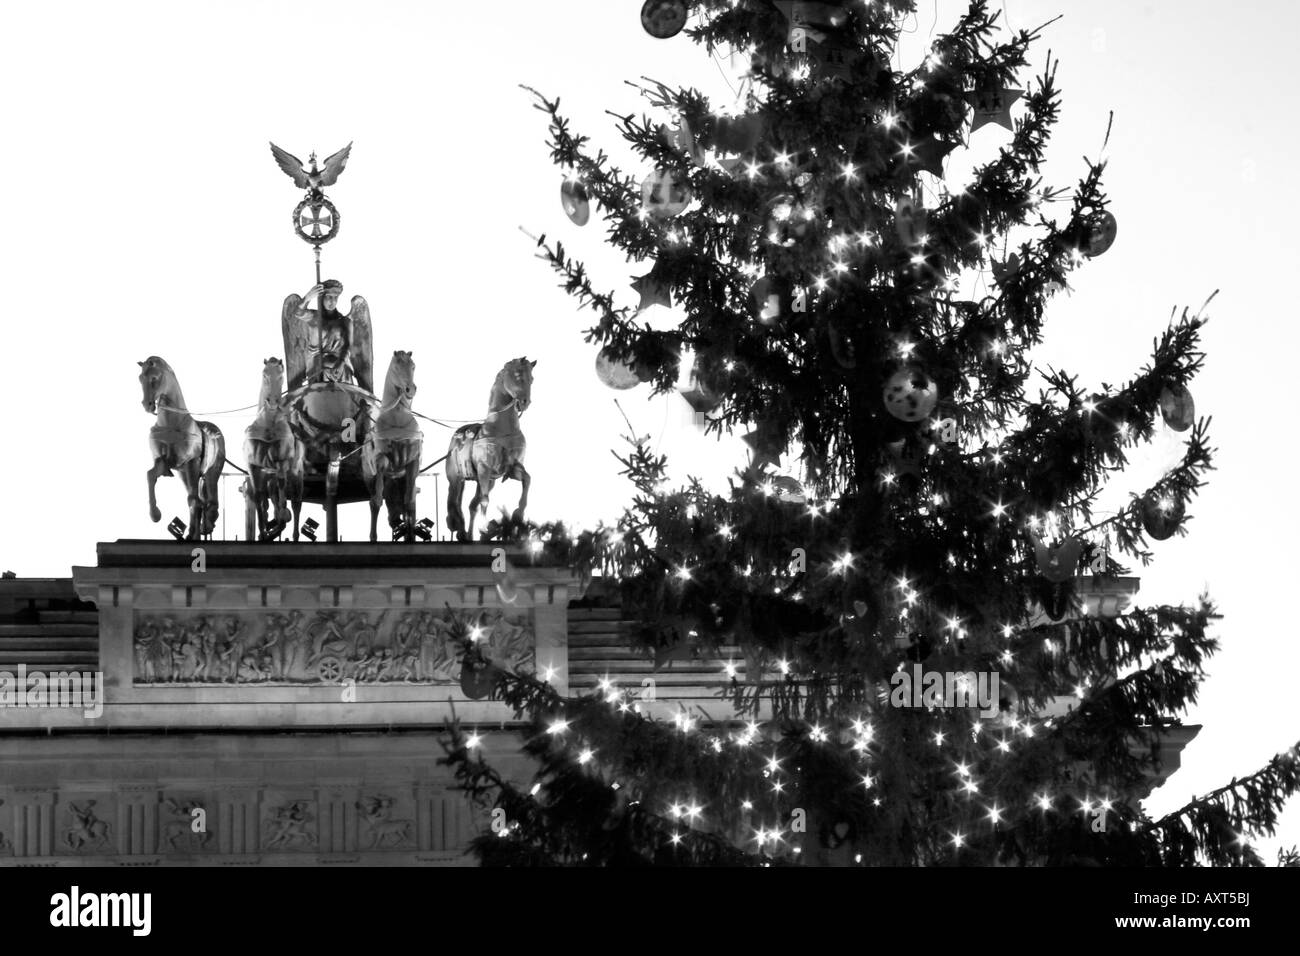 Berlin Brandeburg gate christmas tree Berlin Brandenburger Tor Pariser Platz mit Weihnachtsbaum Stock Photo